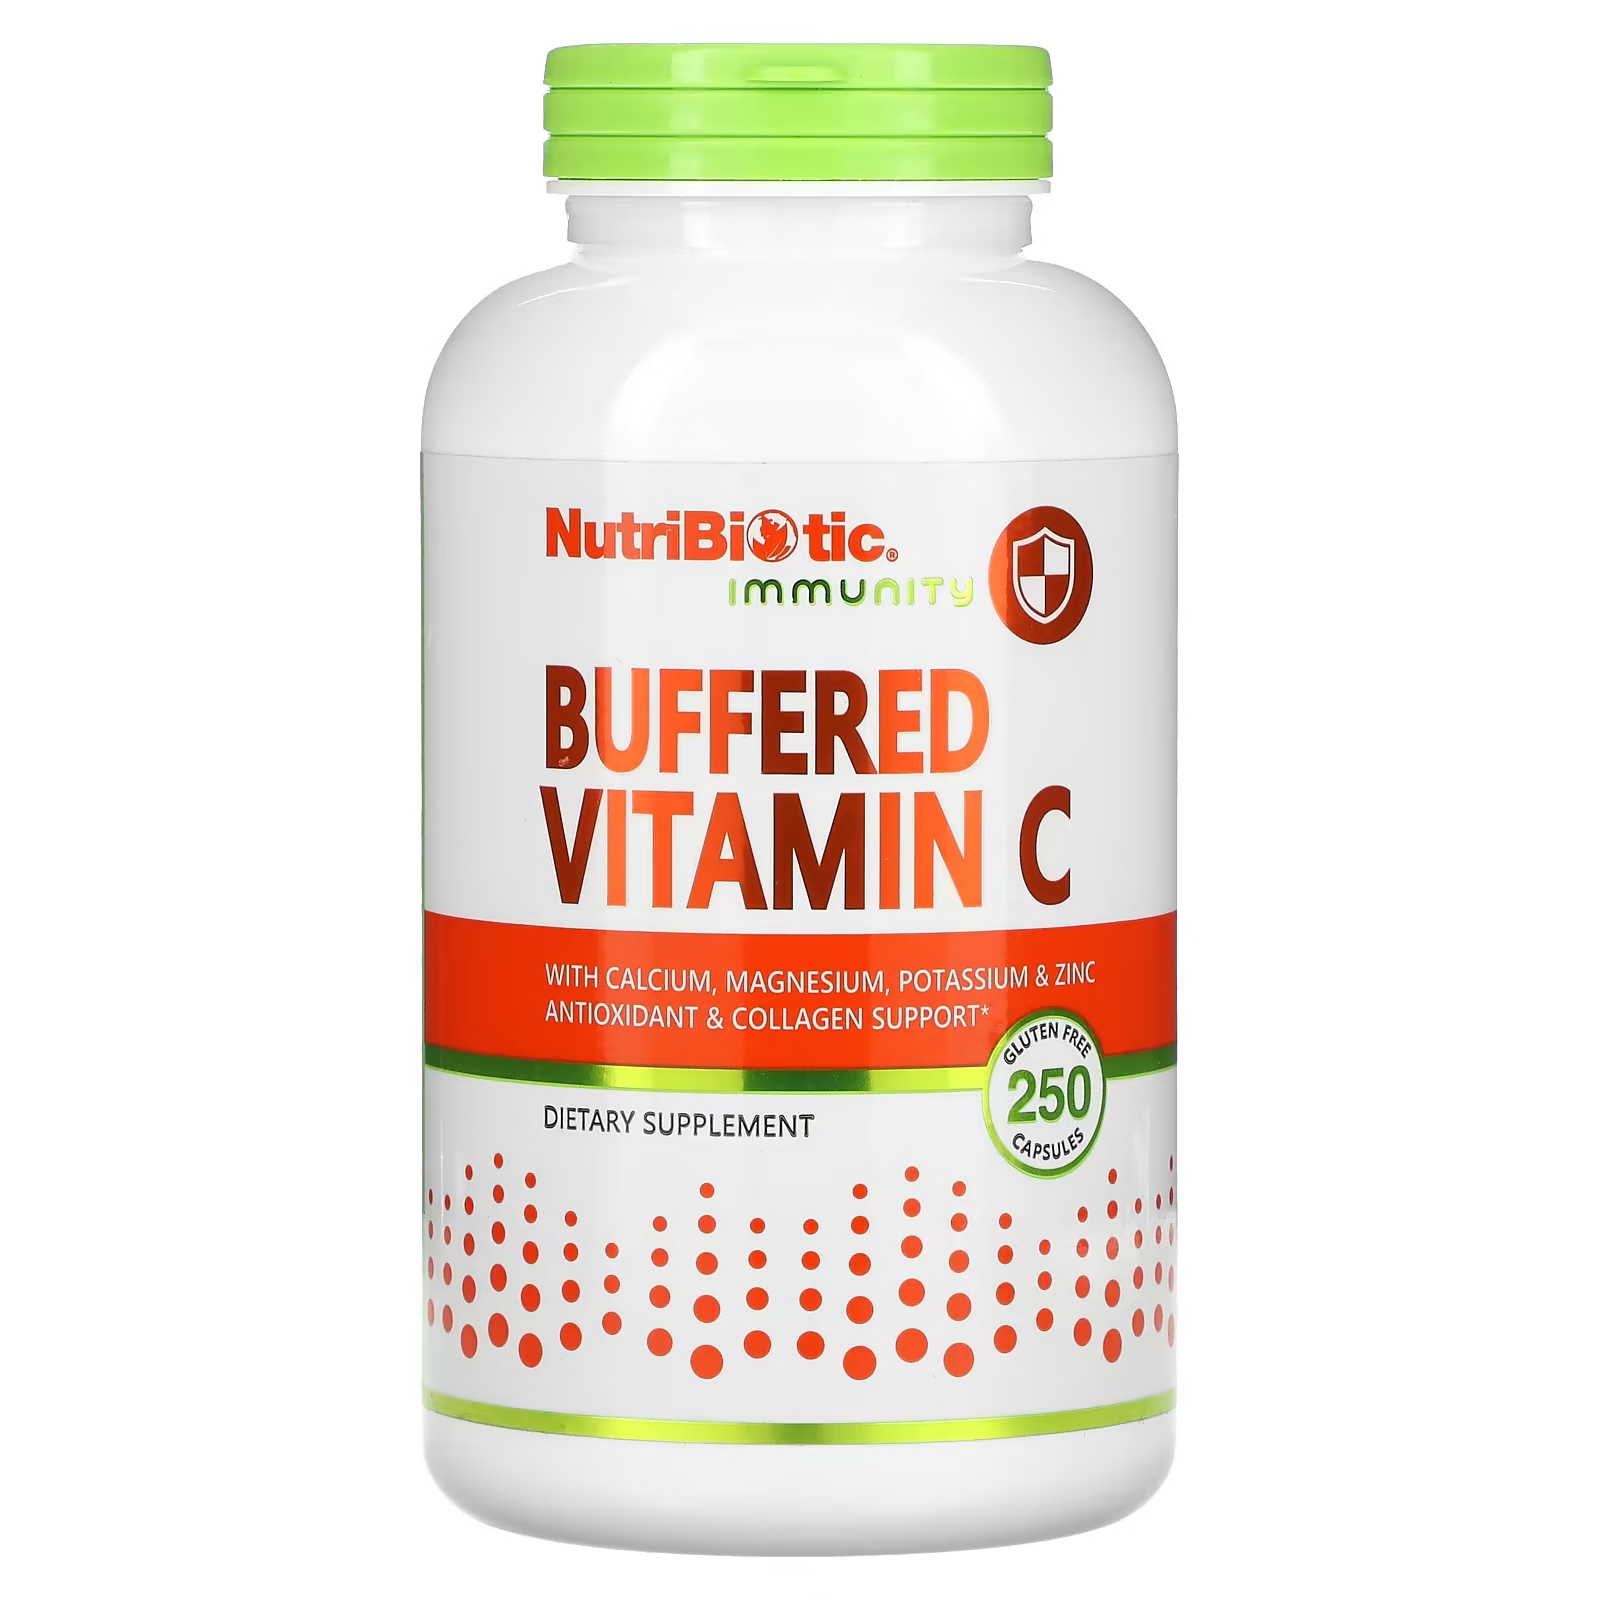 Буферный витамин С NutriBiotic для иммунитета, 250 капсул trace minerals жидкая добавка с кальцием магнием и цинком 946 мл